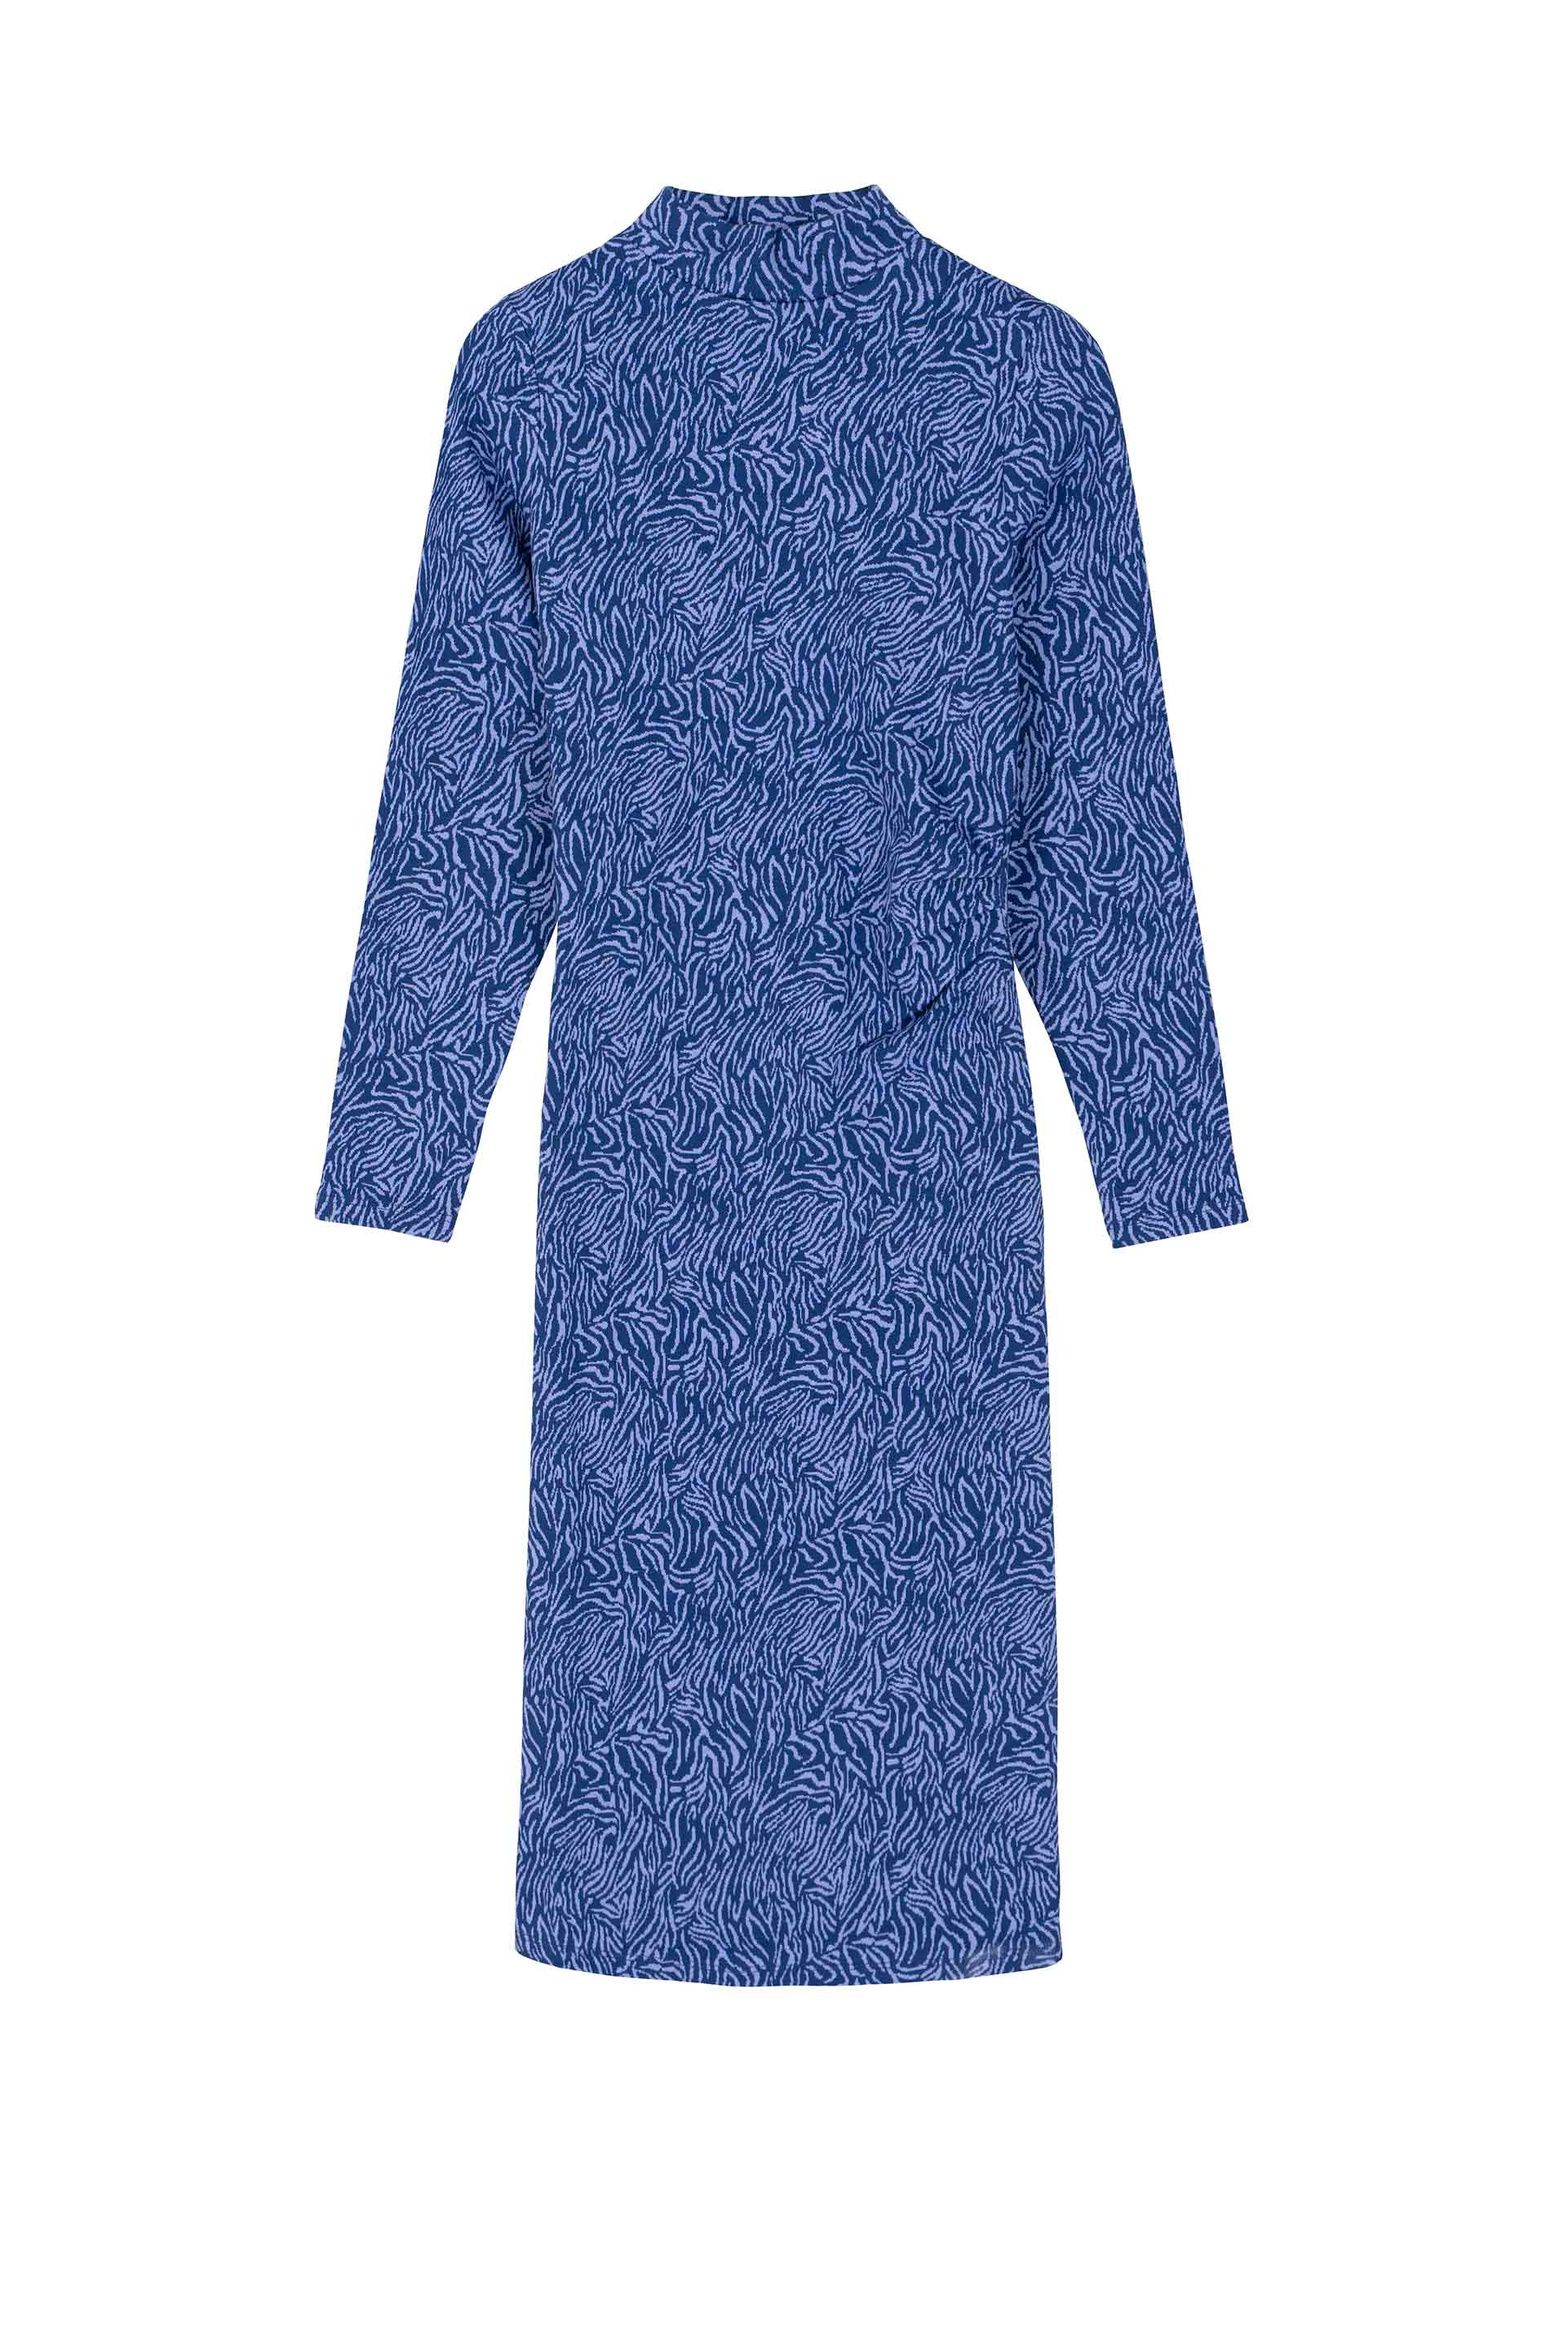 long-sleeve-print-dress_hyacinth_zebra.jpg